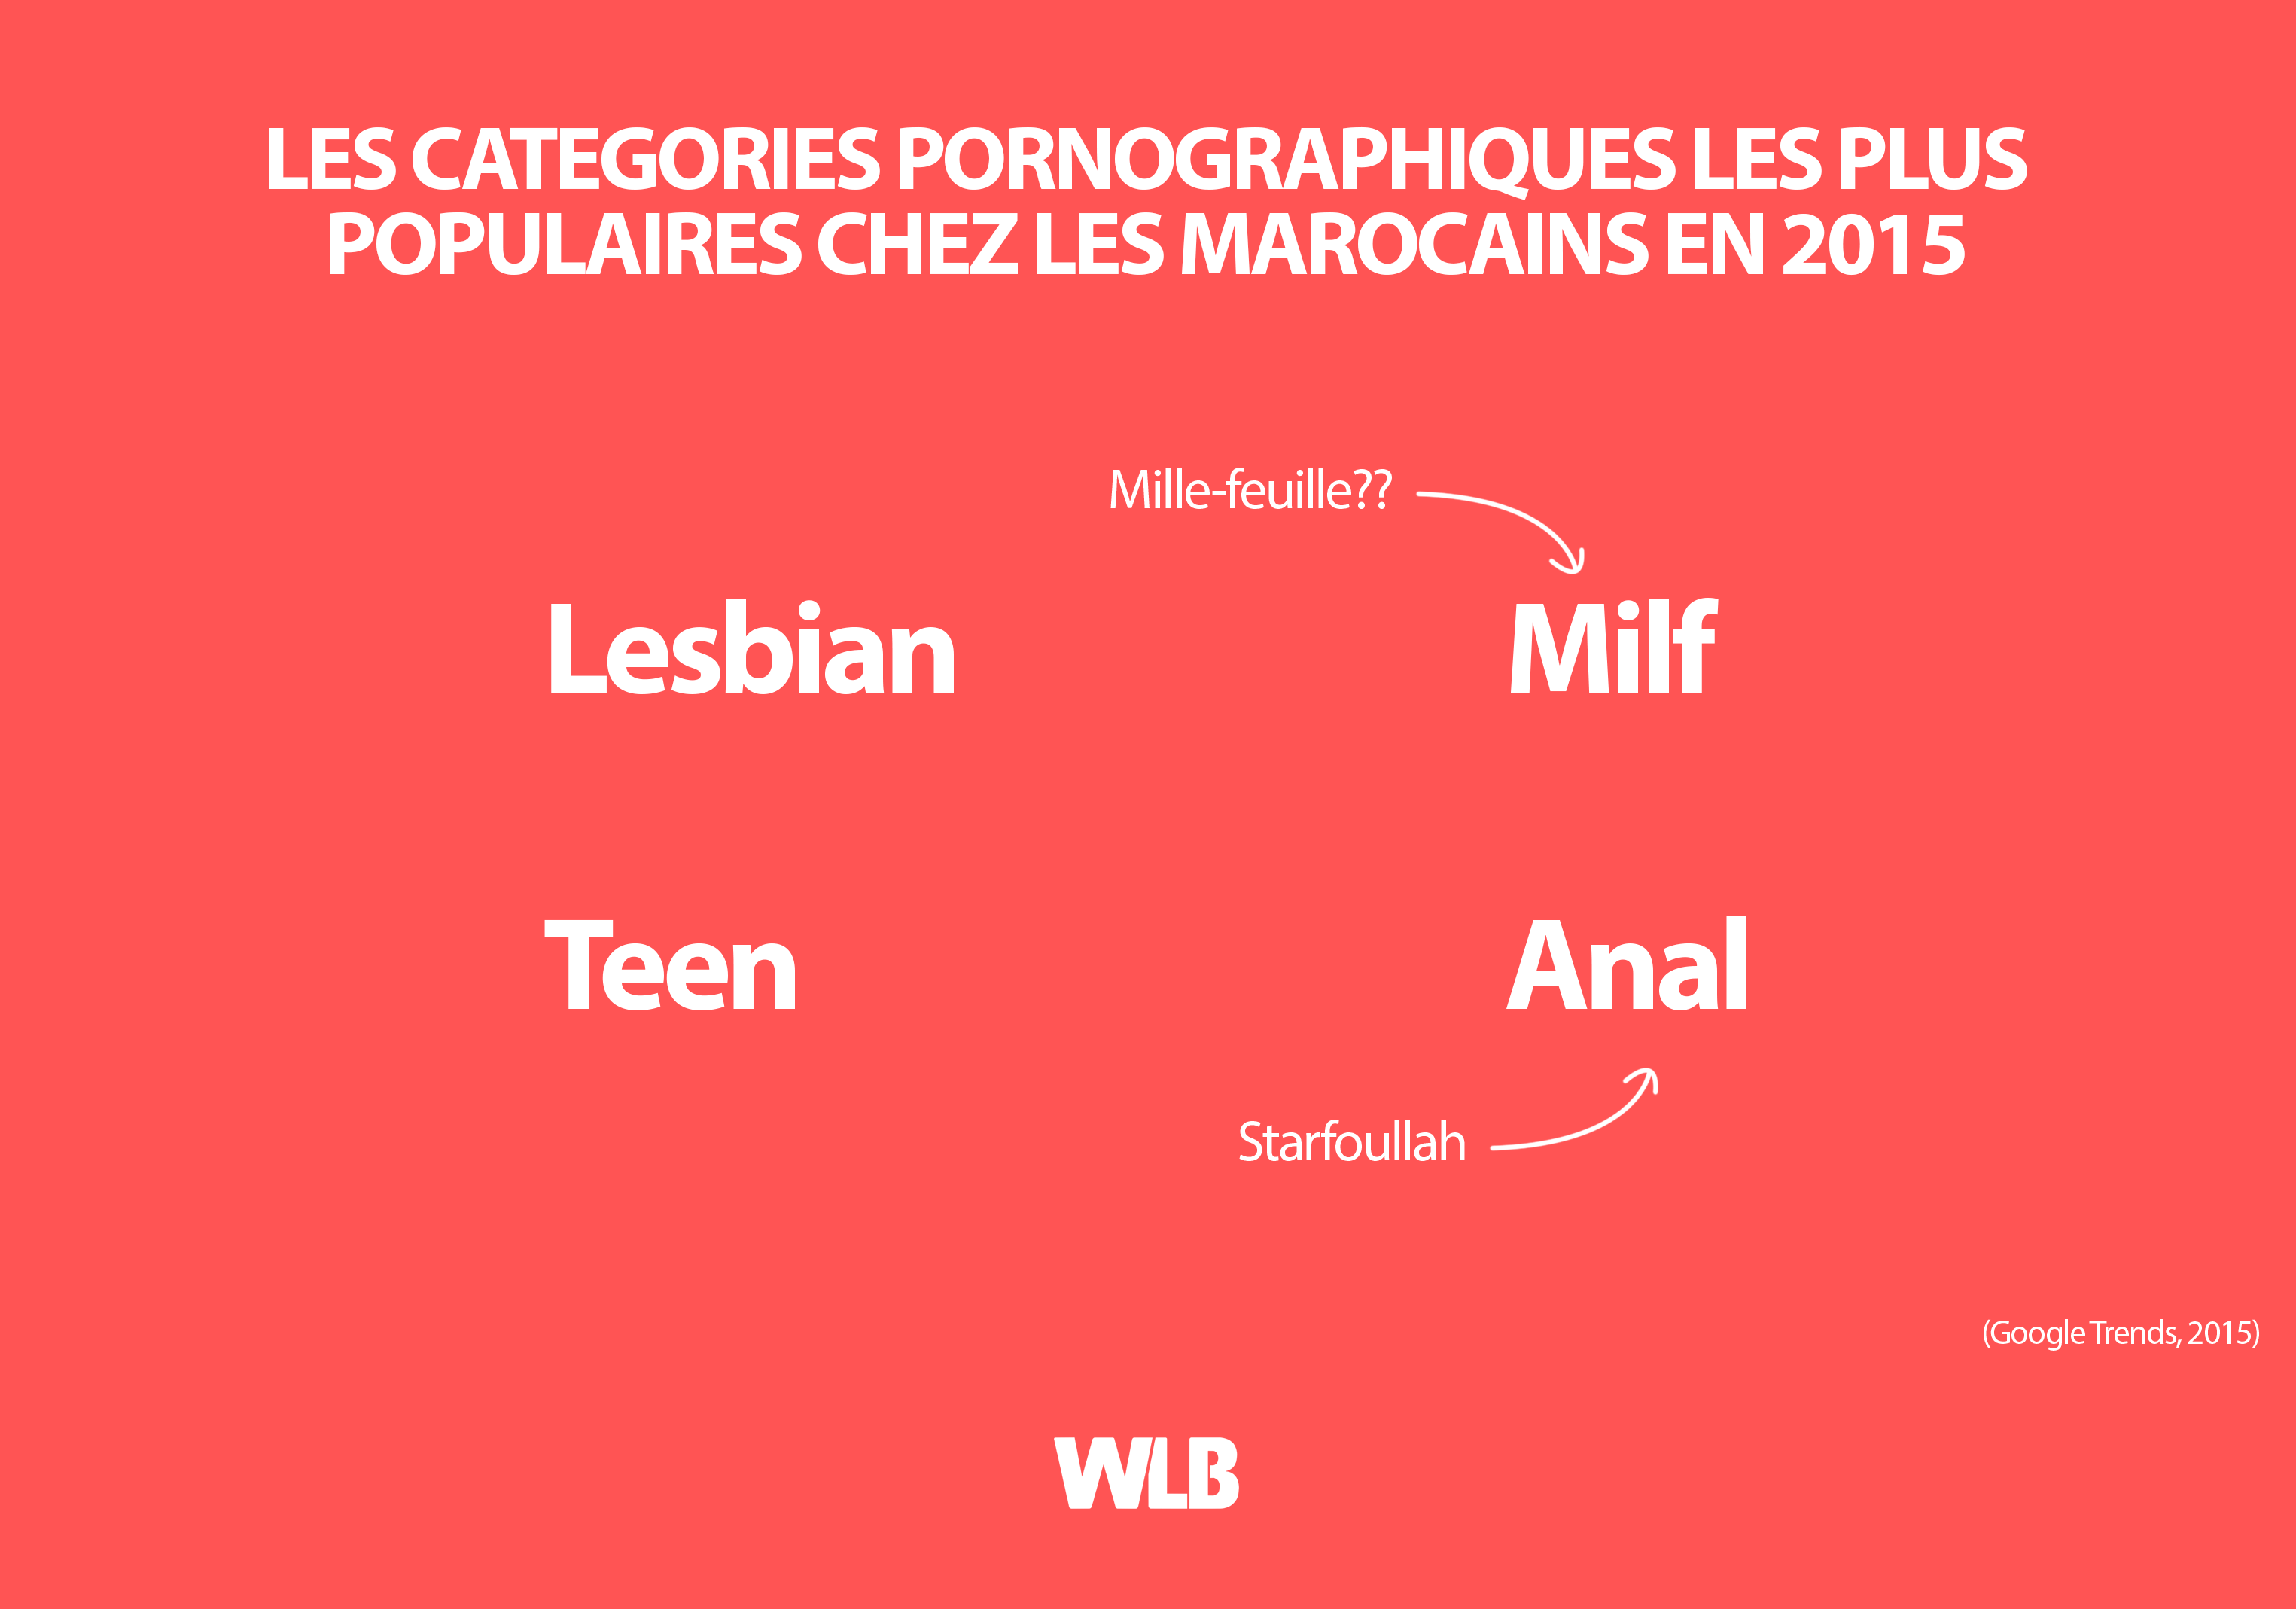 Les Categories Pornographiques les plus populaires chez les Marocains en 2015